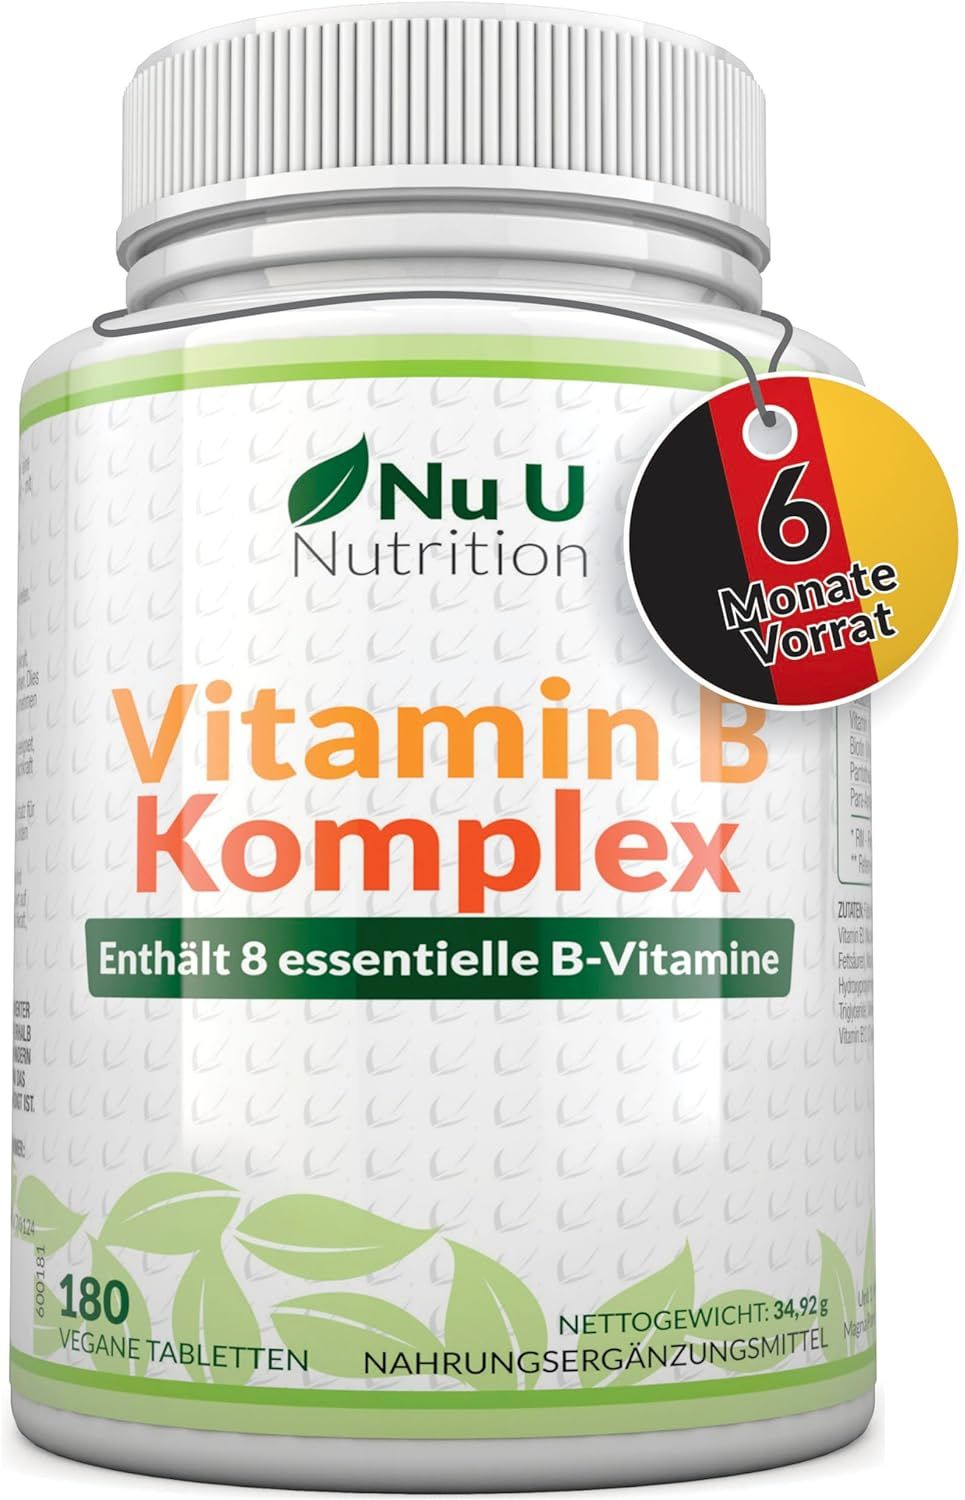 Nu U Nutrition Vitamin B Komplex Hochdosiert